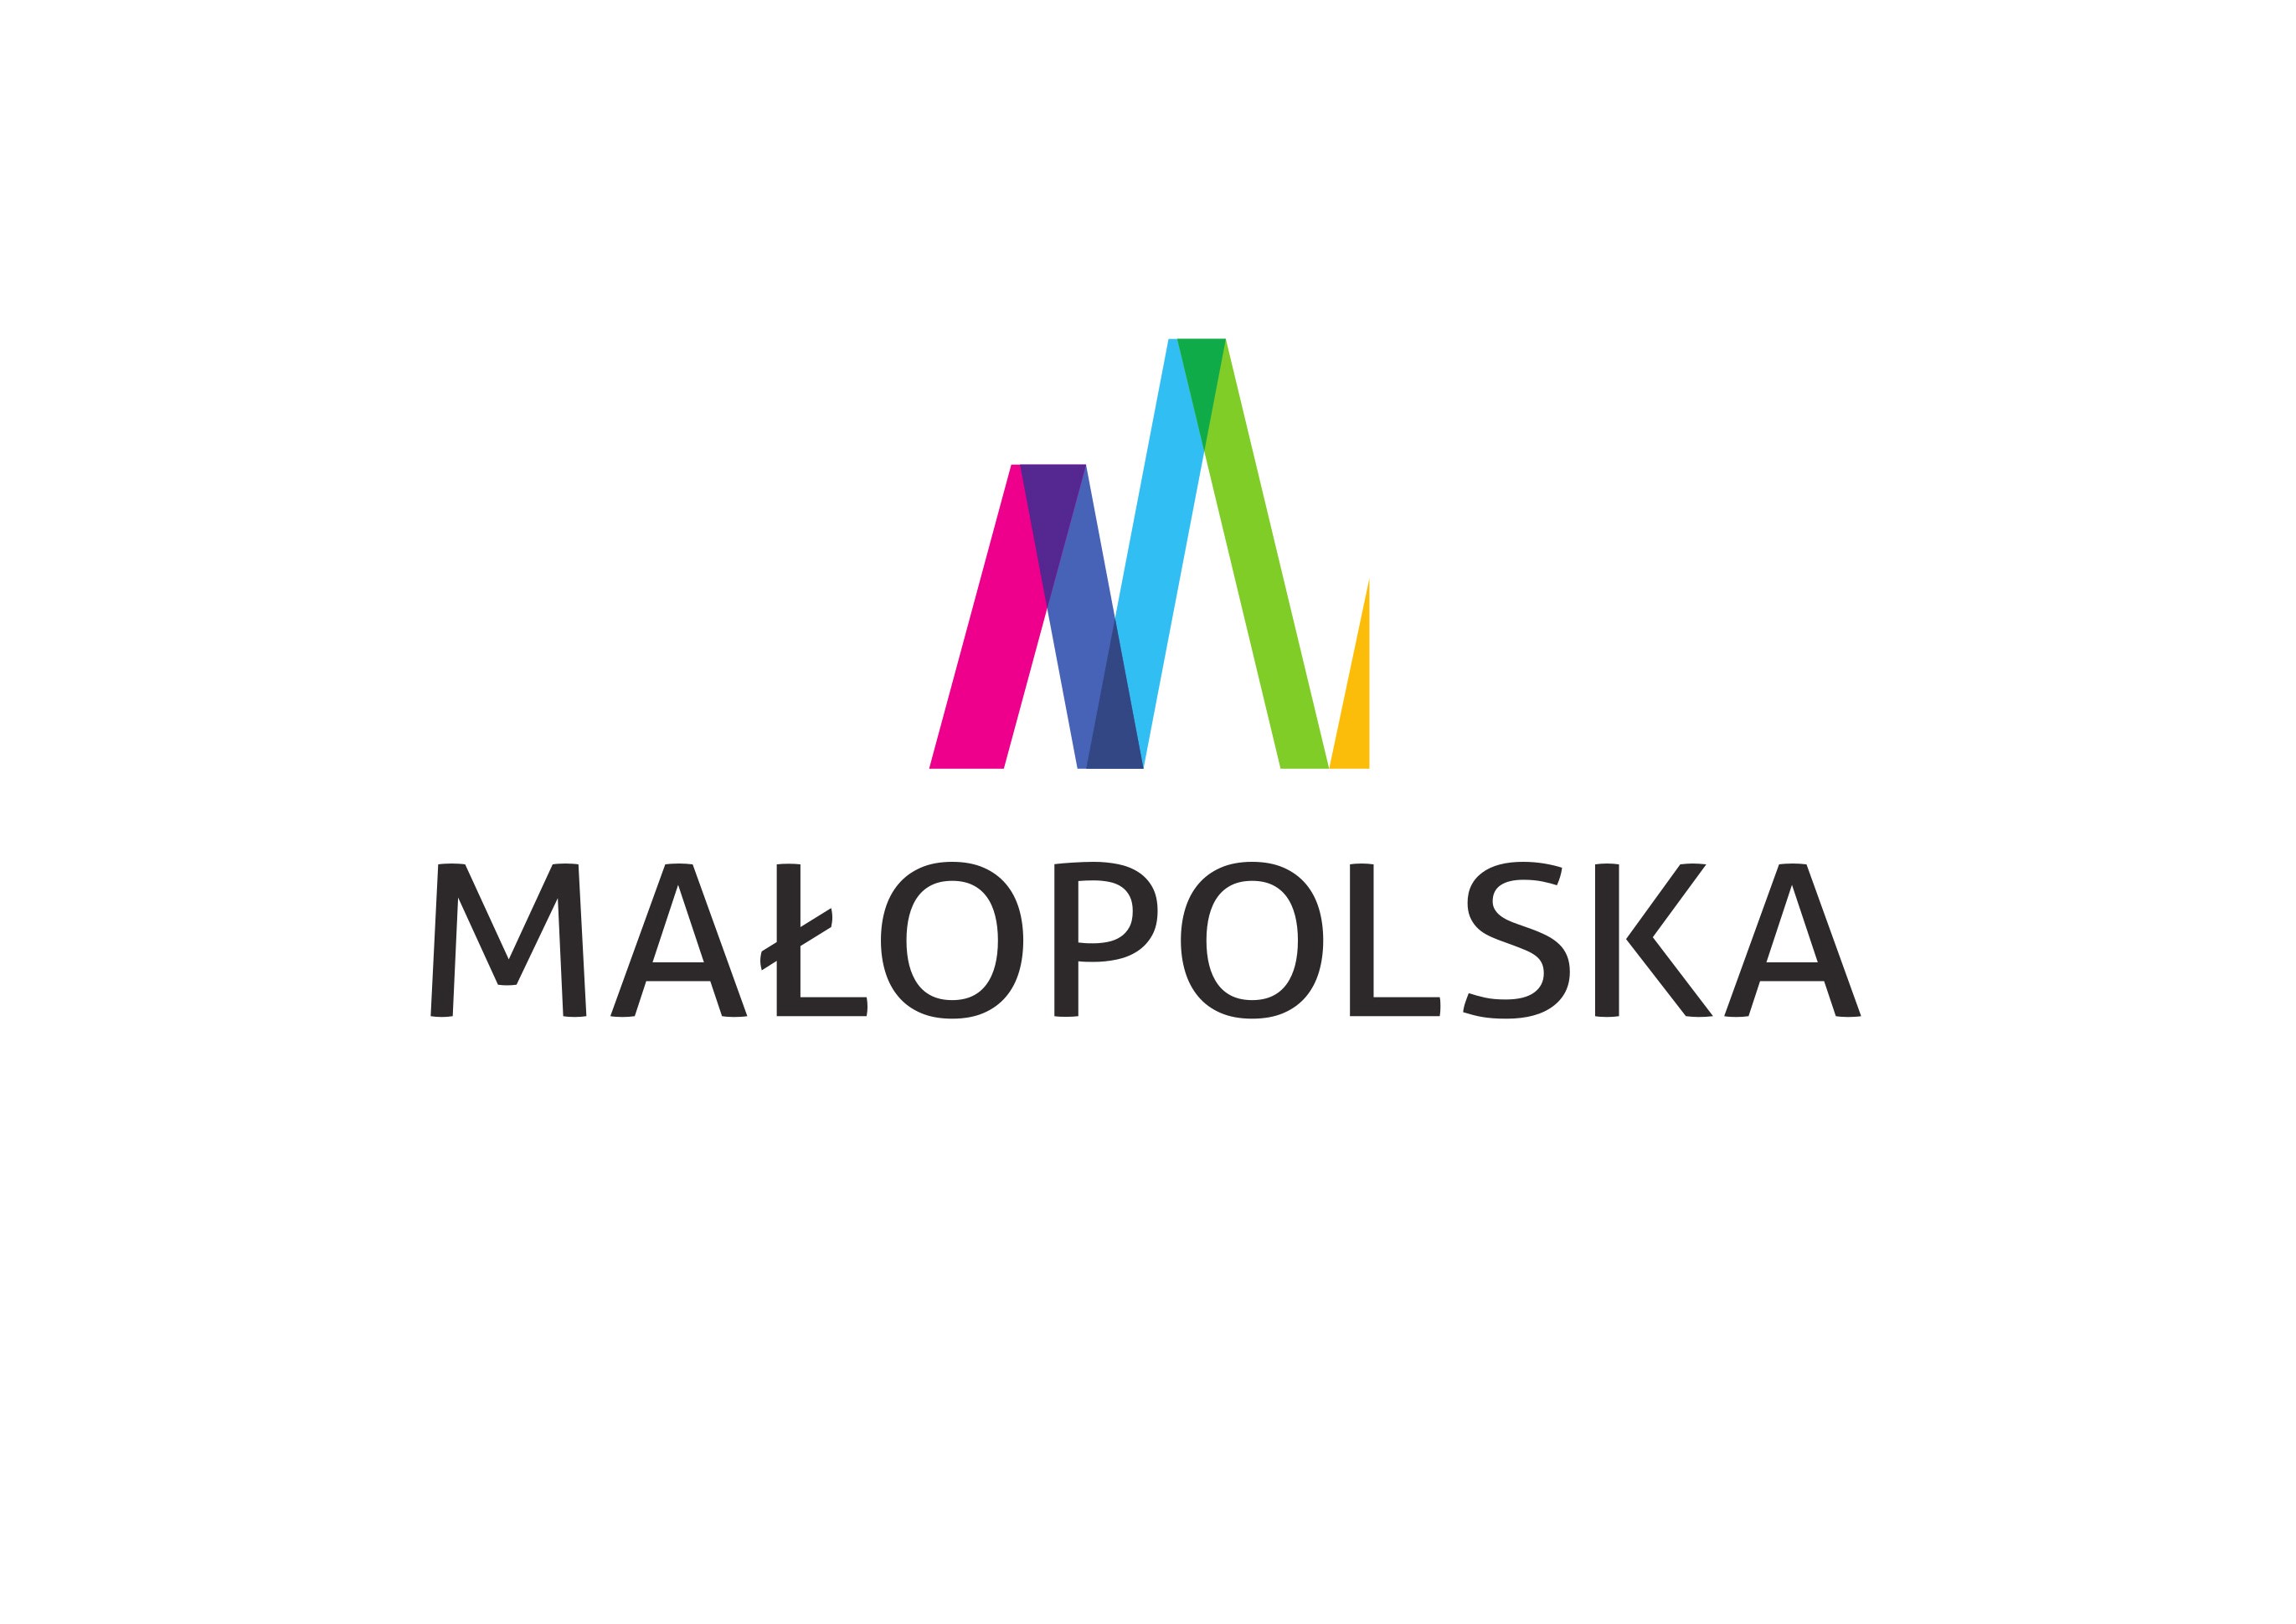 logo Małopolska